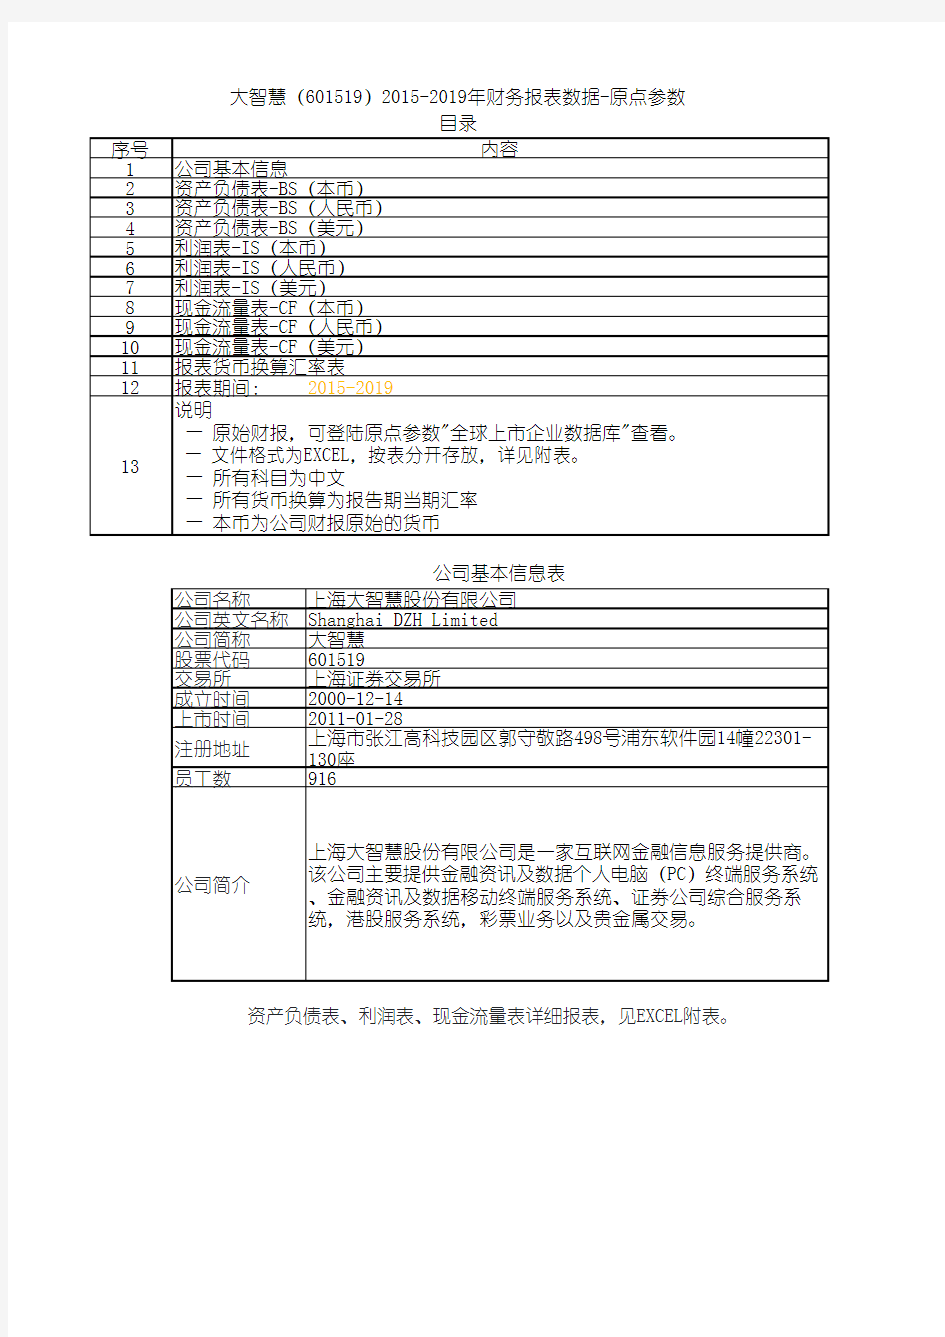 大智慧(601519)2015-2019年财务报表数据-原点参数